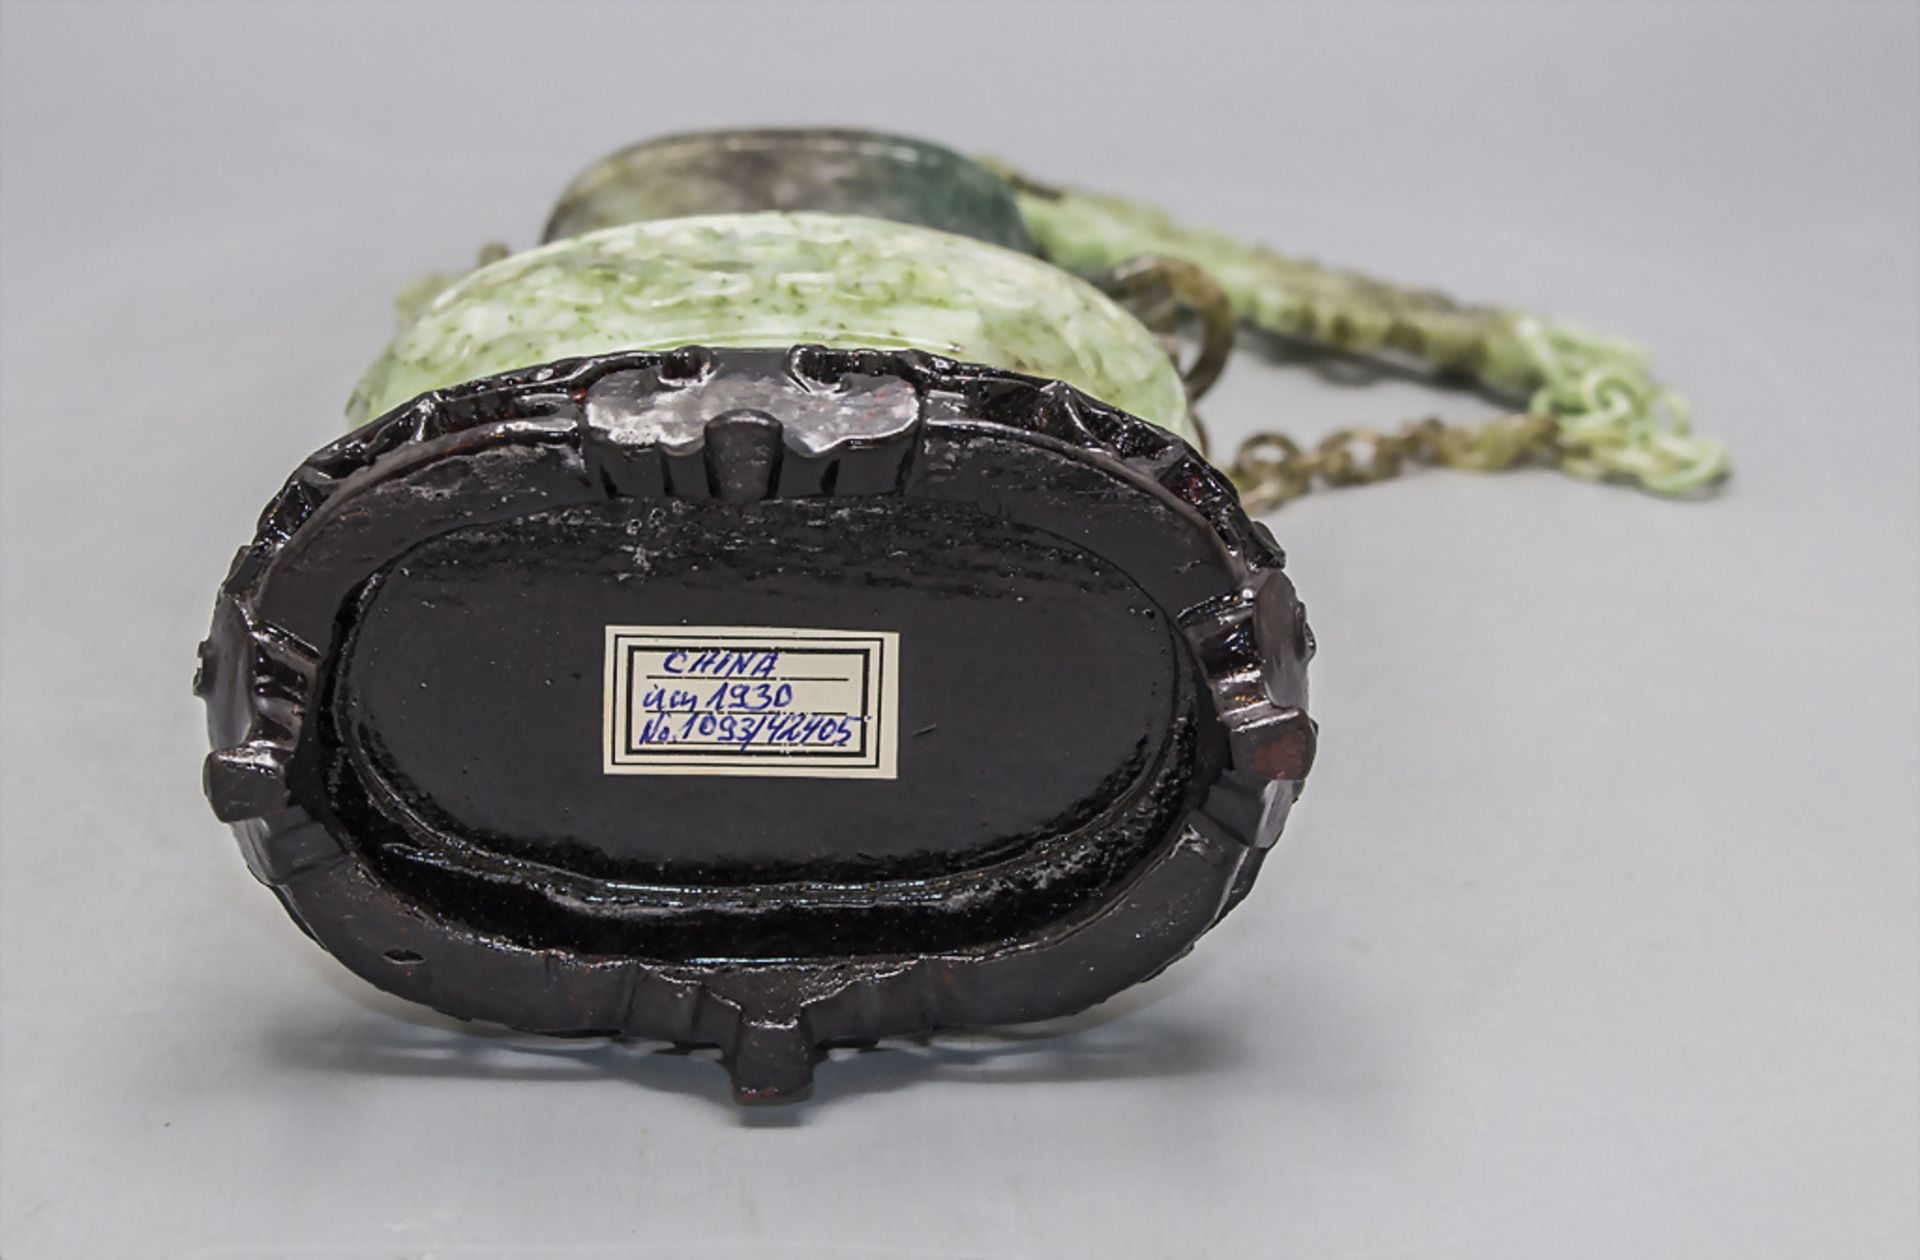 Feine Jade-Deckelvase an Hängekette / A fine jade lidded vase on a chain, China, um 1920 - Image 8 of 10